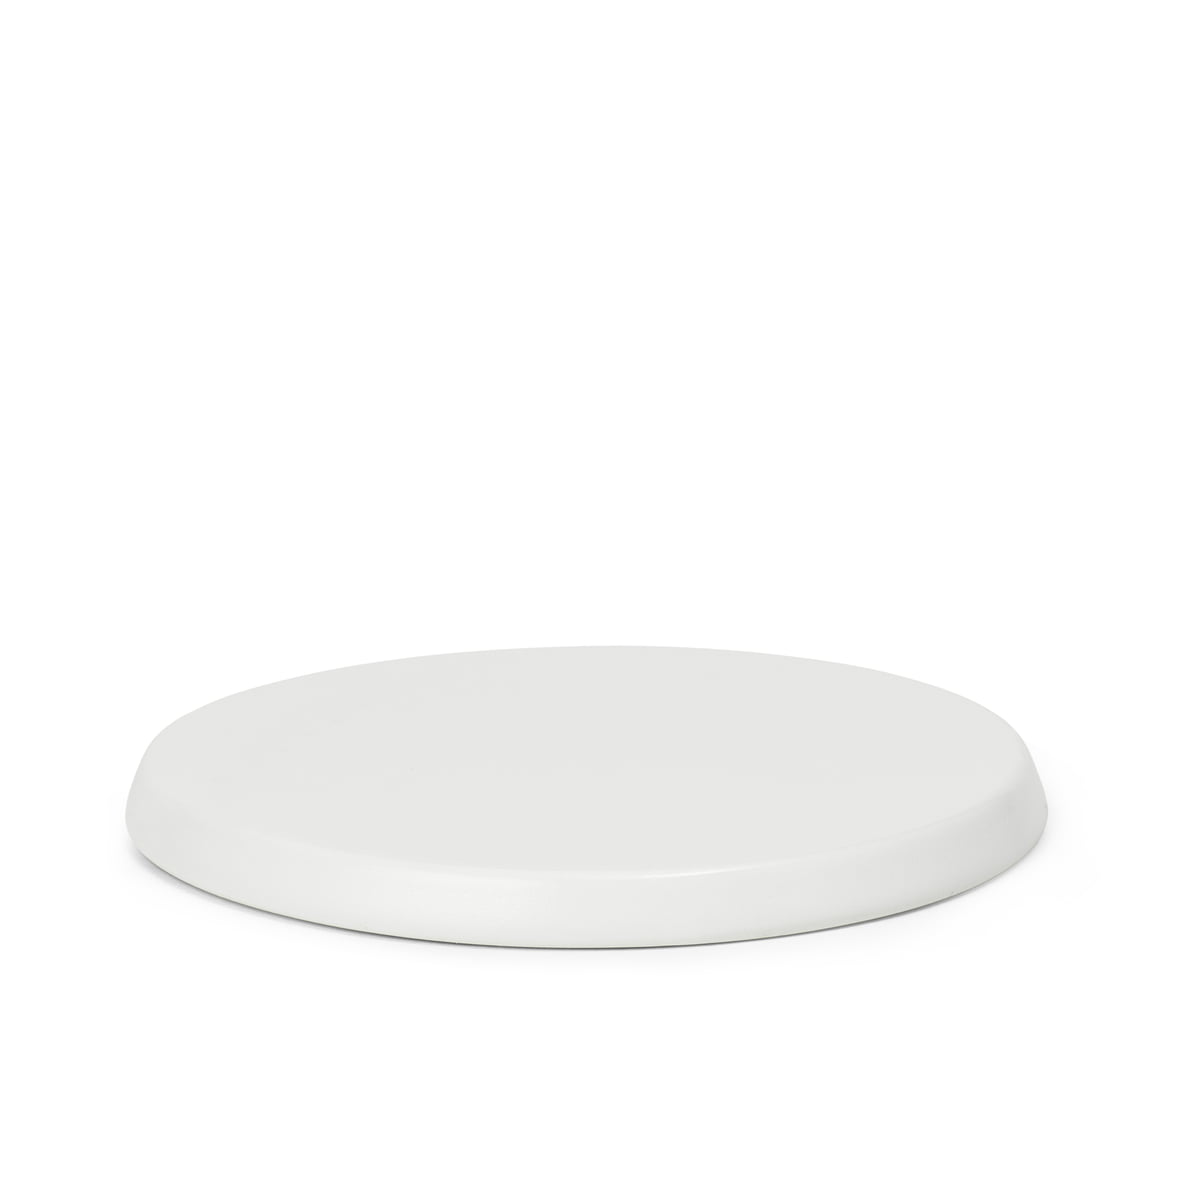 kay bojesen - plate-forme pour les mariés, h 10 cm, blanc